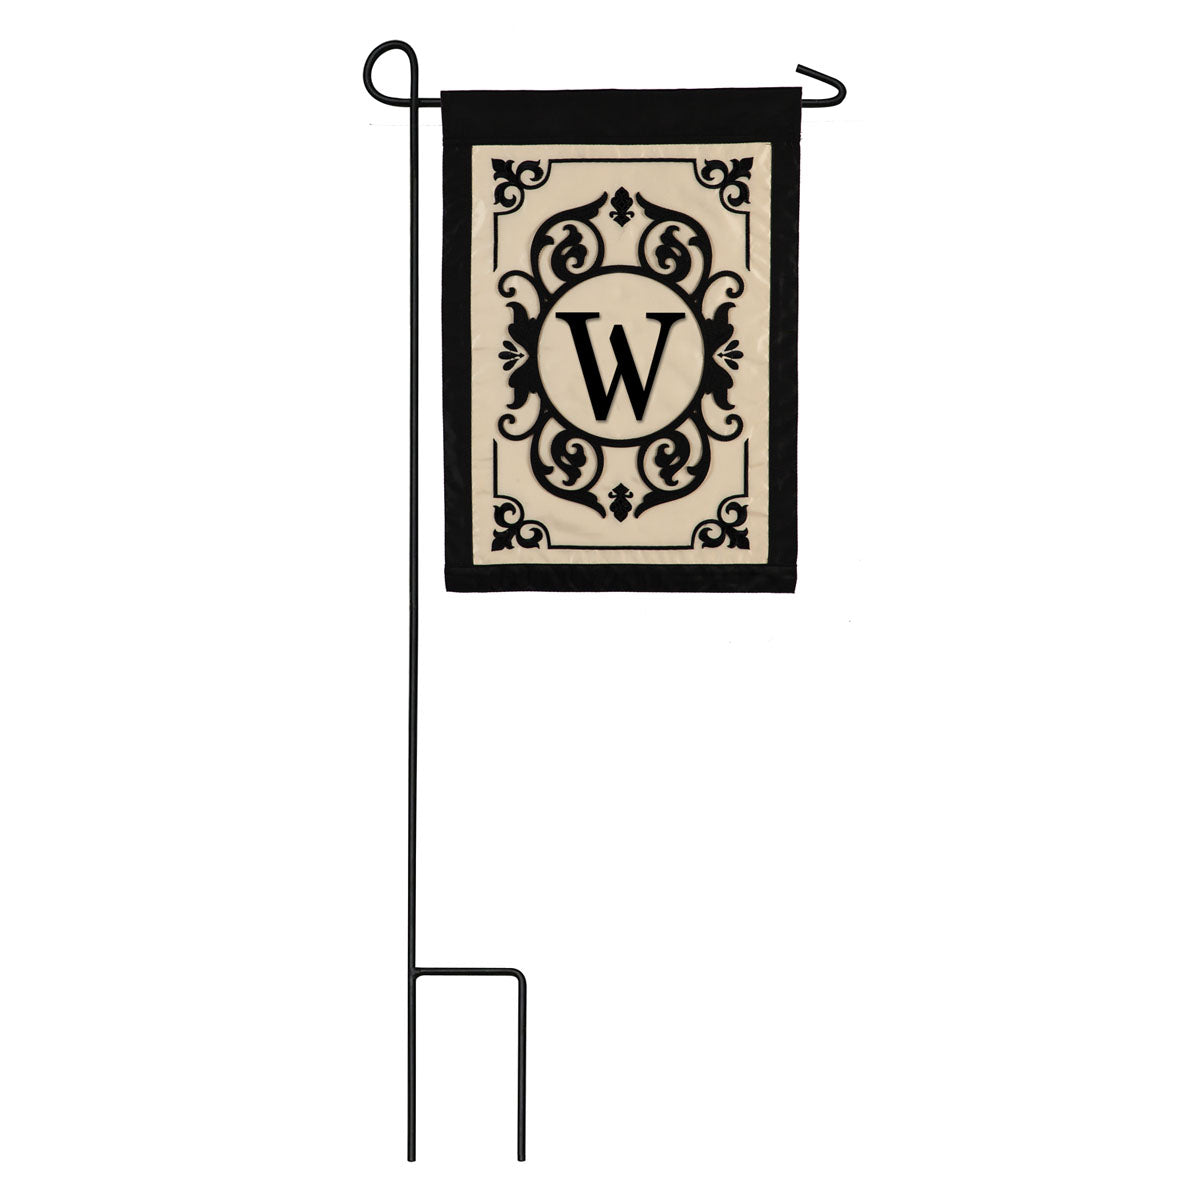 Cambridge Monogram Garden Applique Flag, "W"